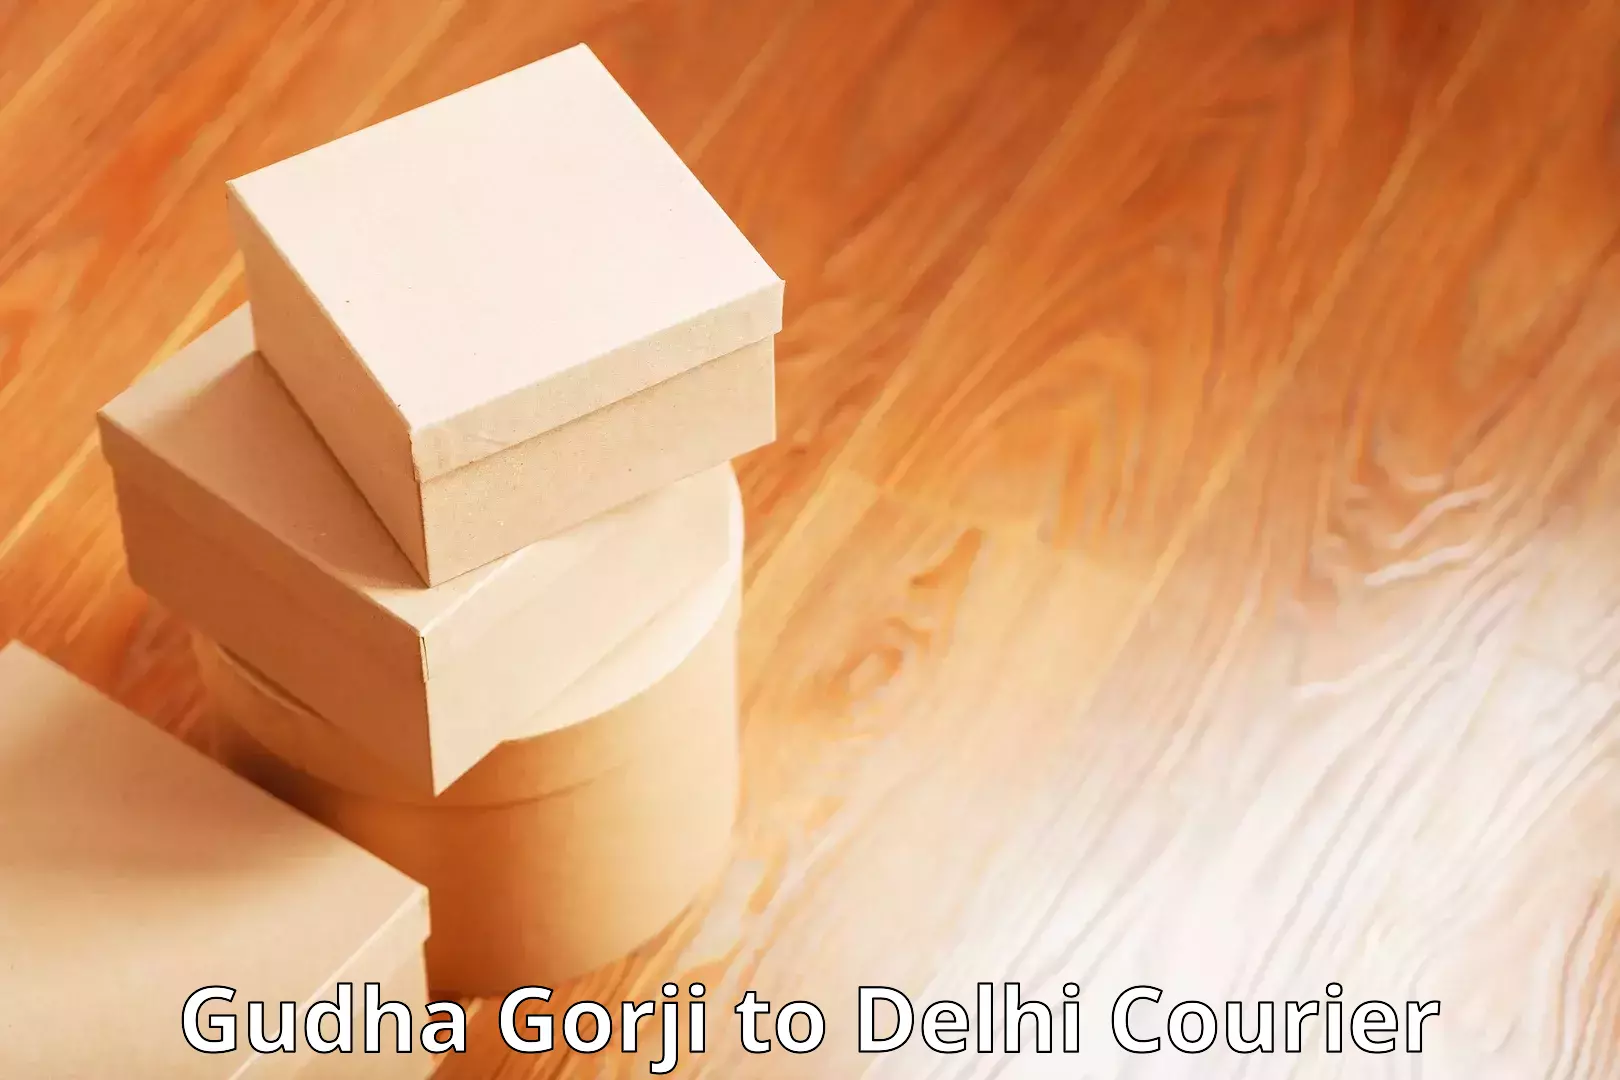 Digital courier platforms Gudha Gorji to Naraina Industrial Estate